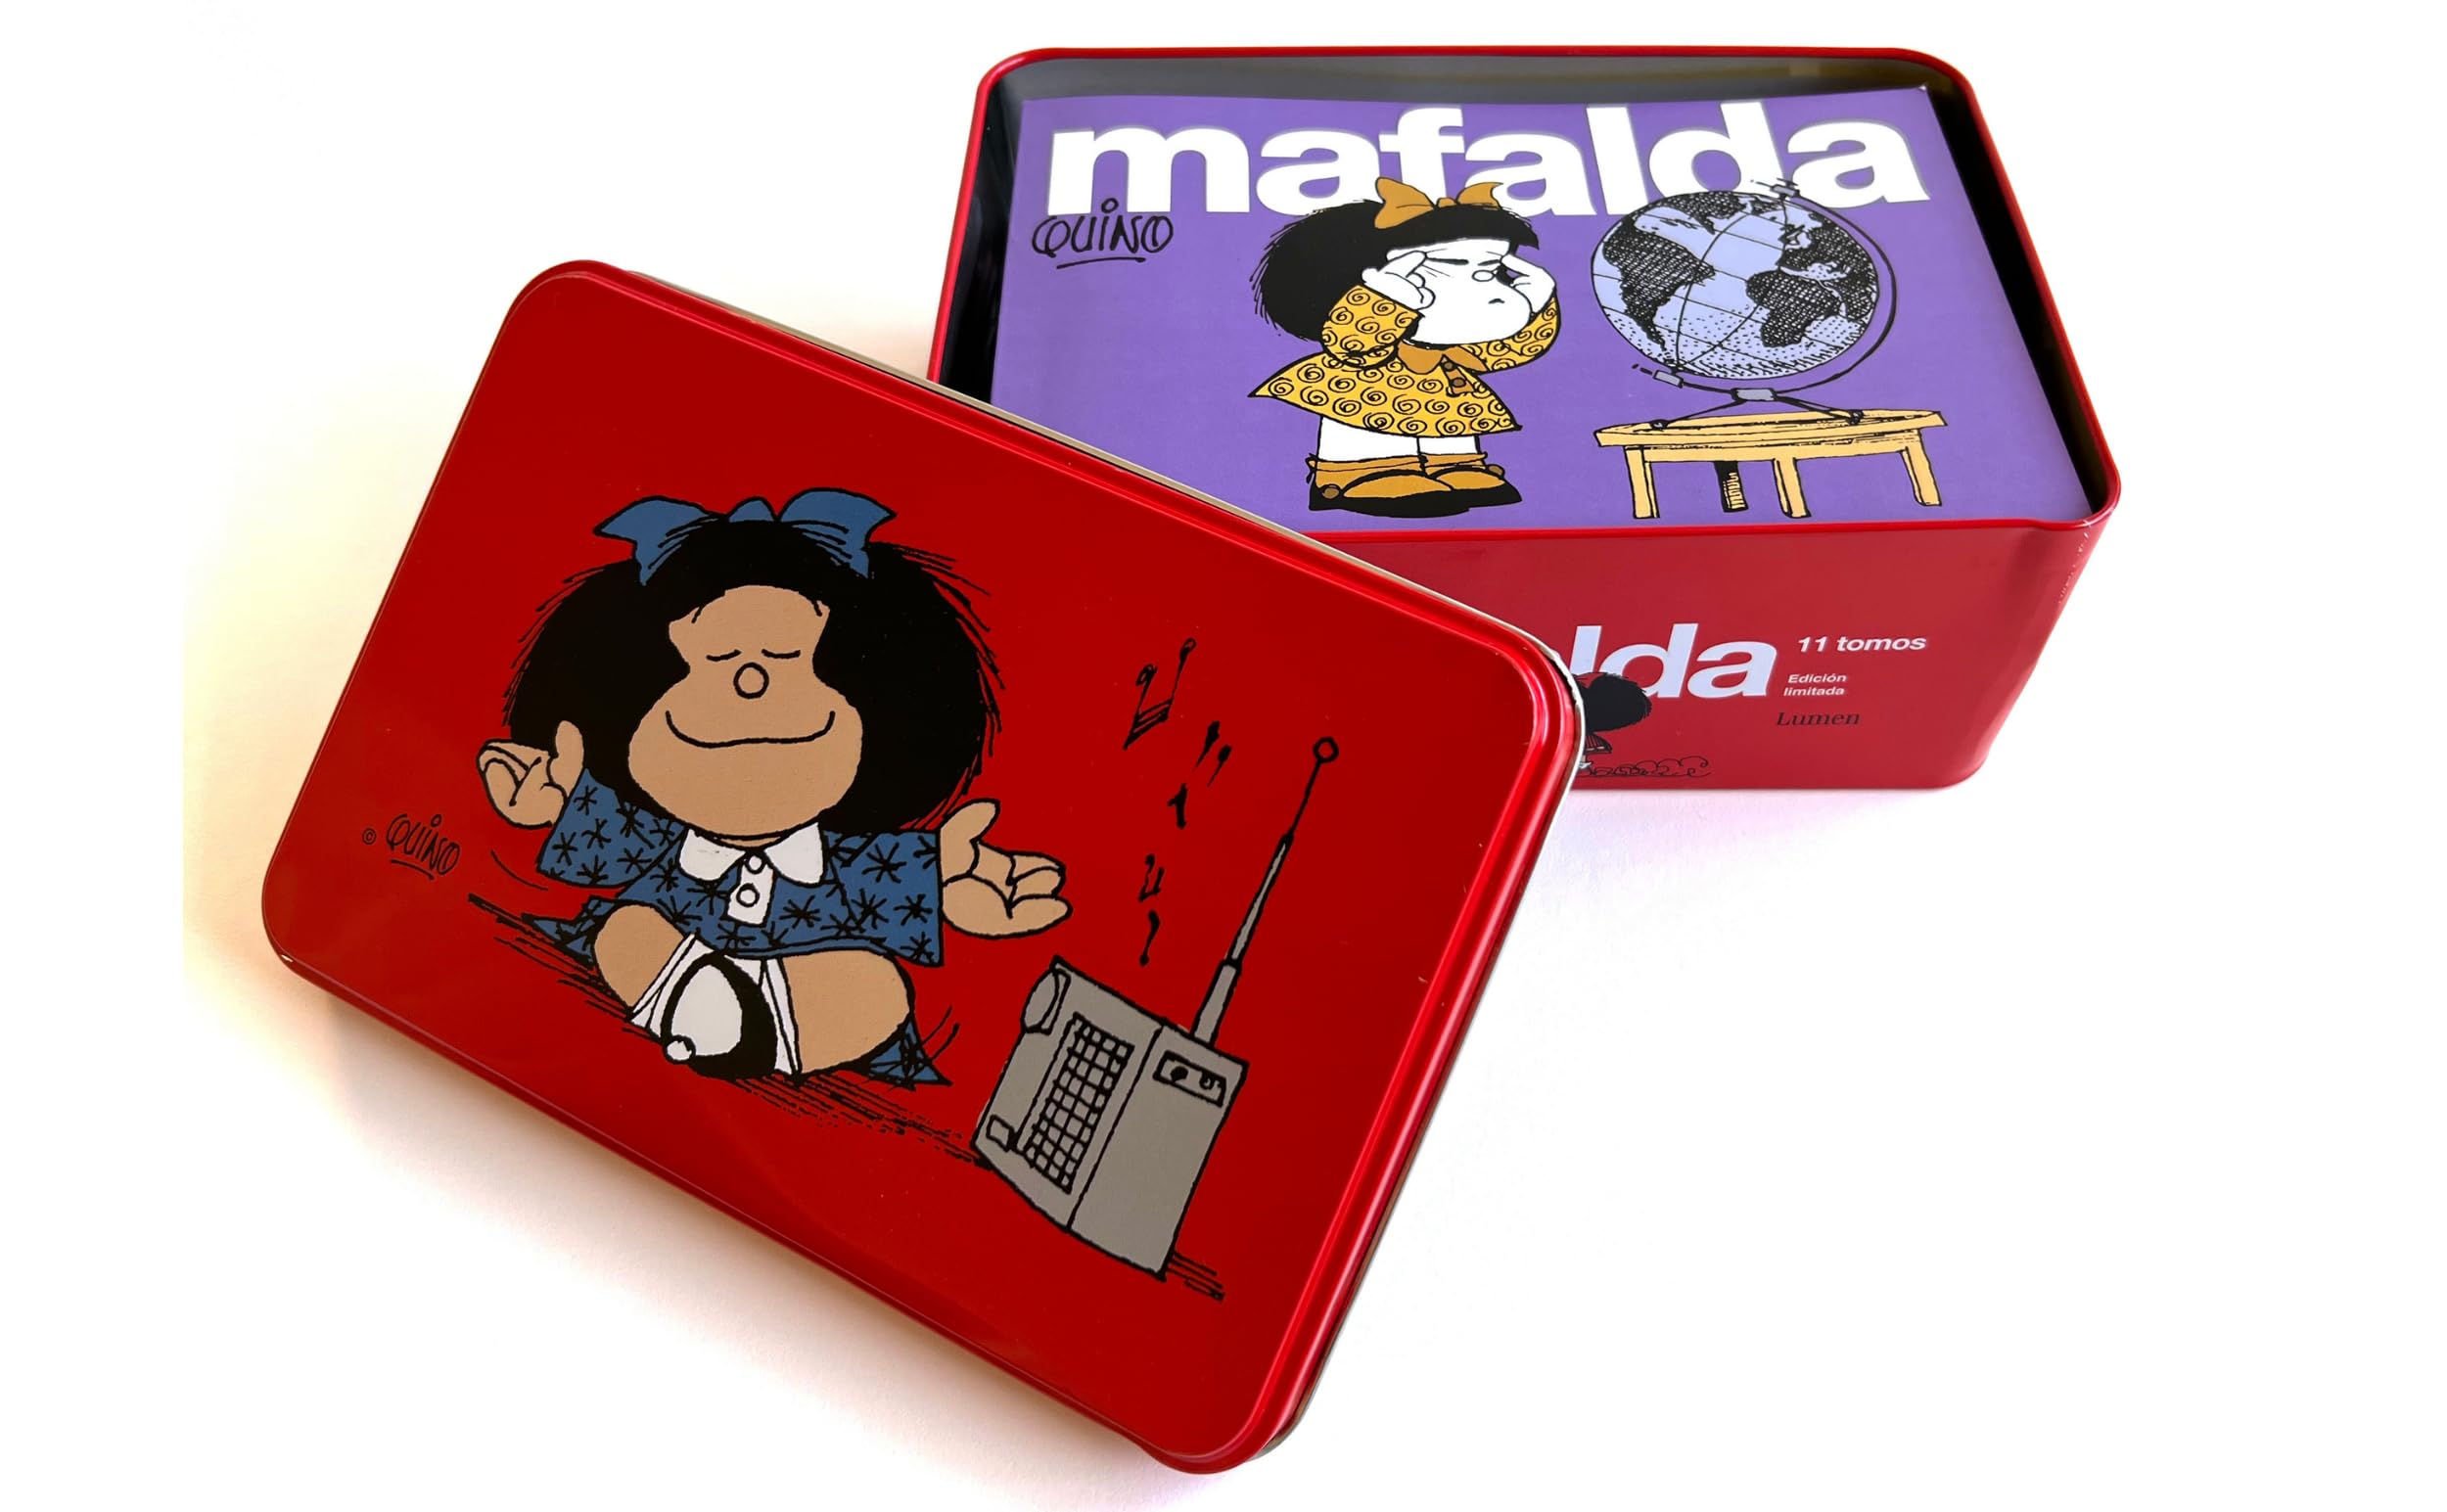 11 tomos de MAFALDA en una lata roja (Edición limitada) / 11 Mafalda's titles in a red can (Limited Edition) (Spanish Edition)